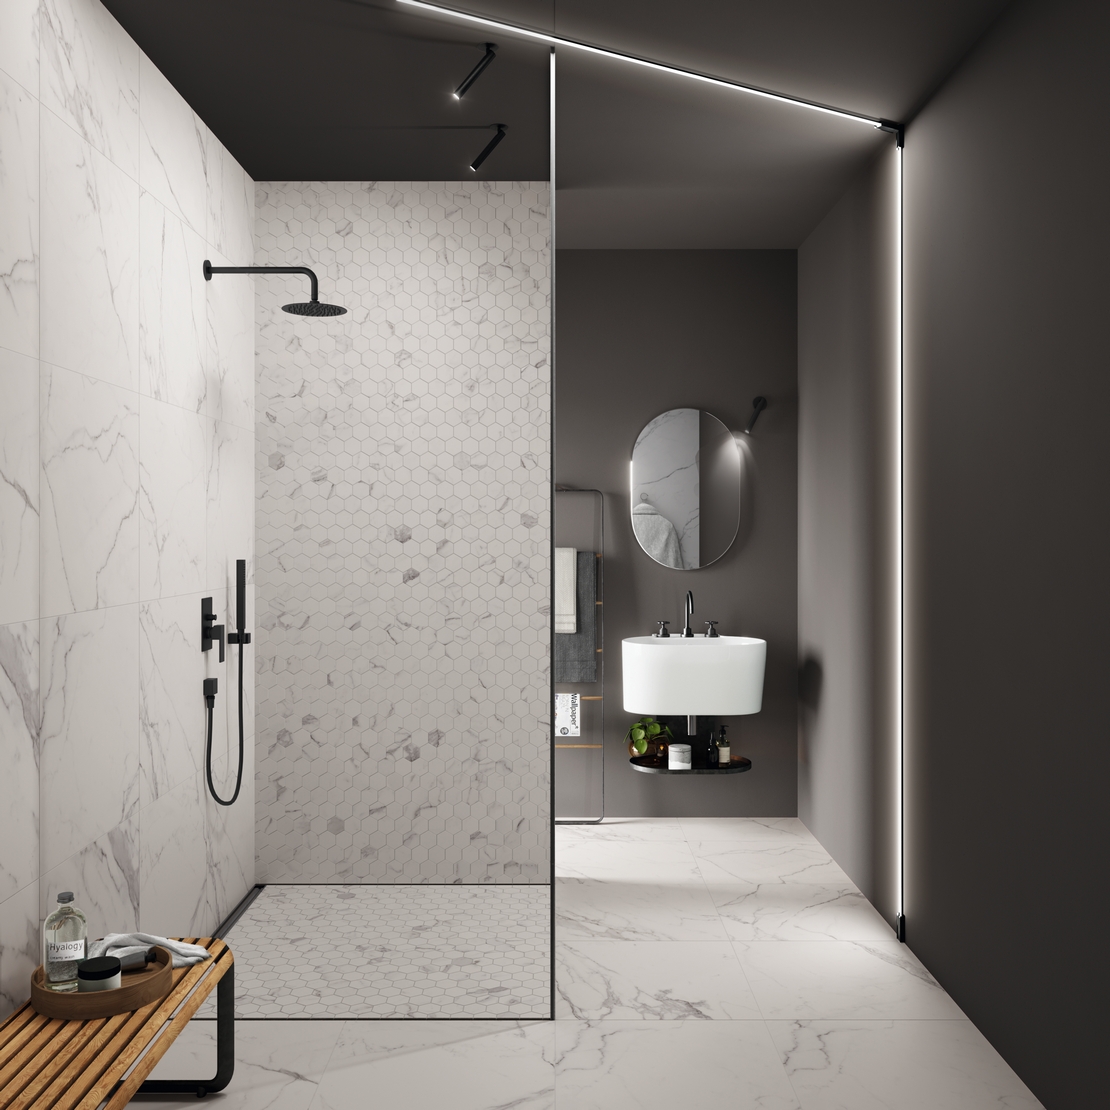 Luxuriöses Badezimmer im industriellen Stil mit Dusche. Minimalistische Weiße Marmoroptik - Inspirationen Iperceramica